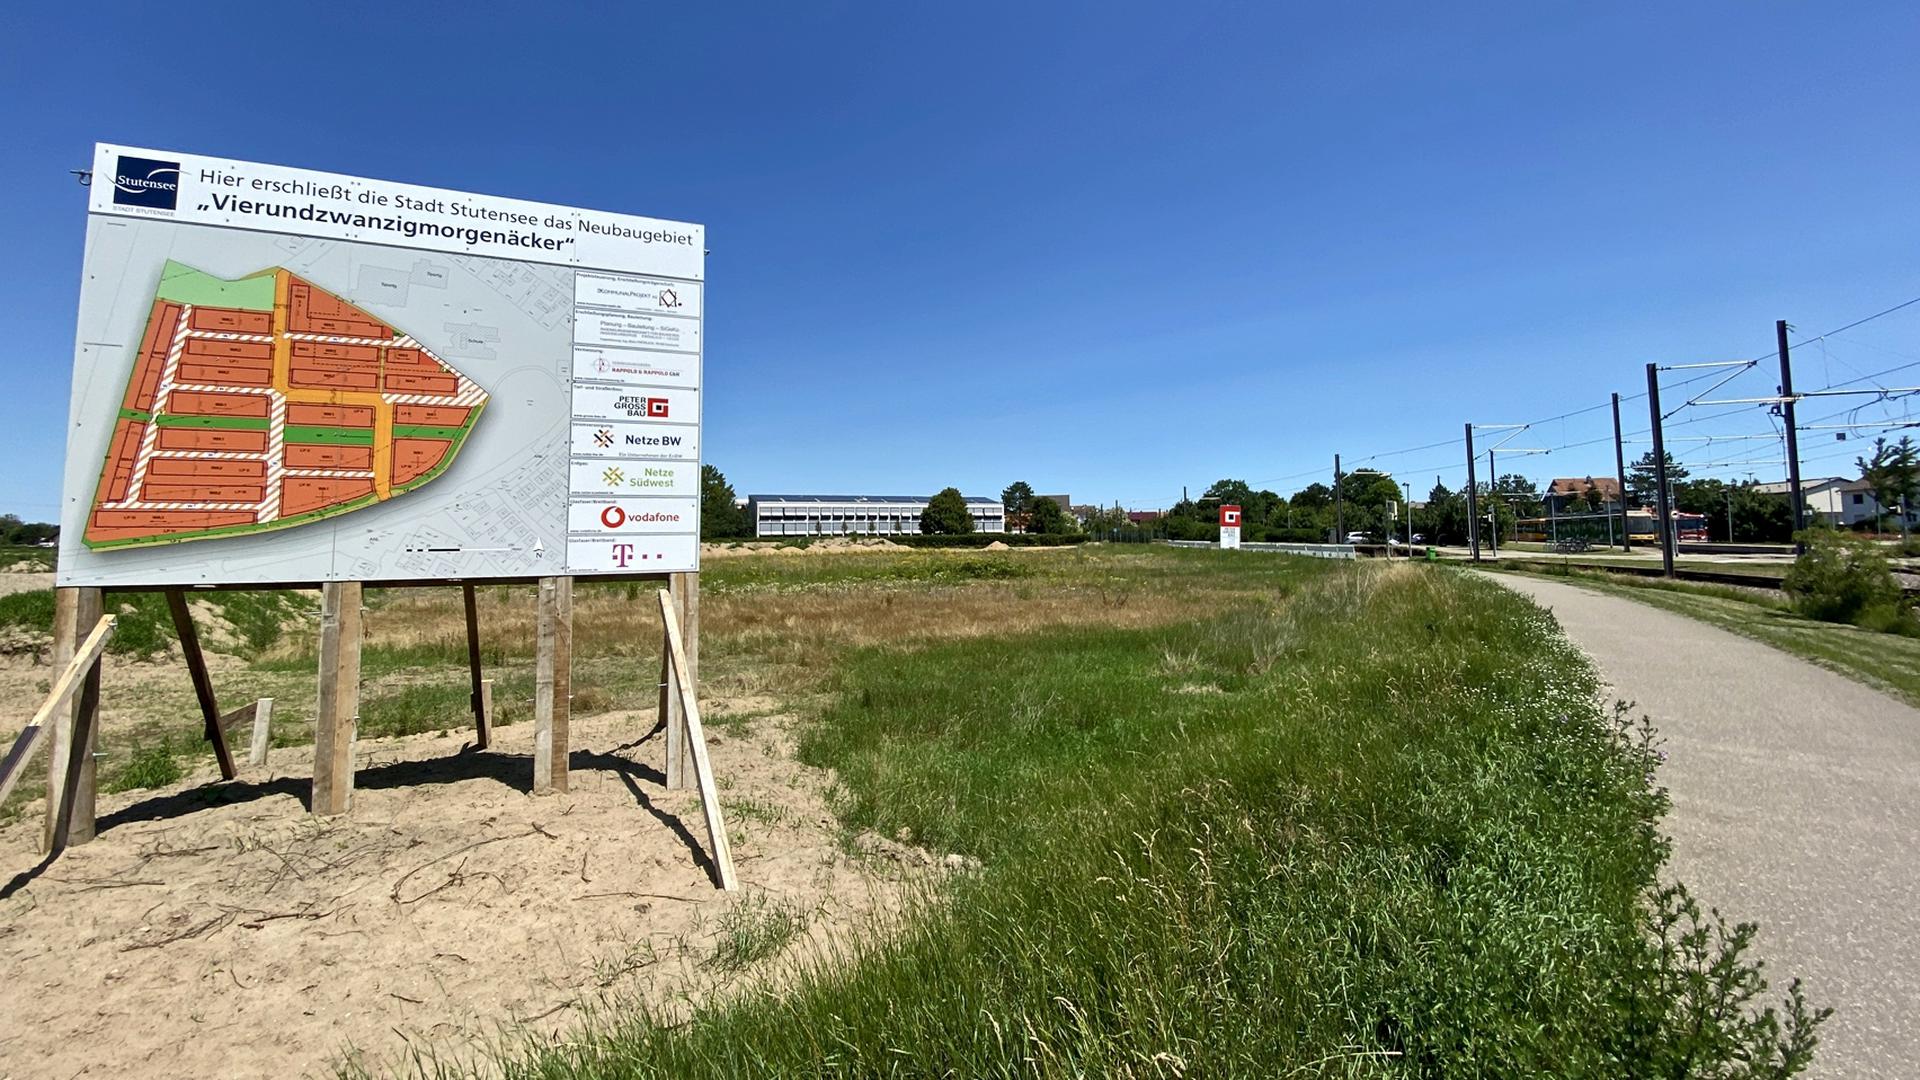 Großes Schild mit Plan, Grundstück, Schulgebäude im Hintergrund, Straßenbahnlinie